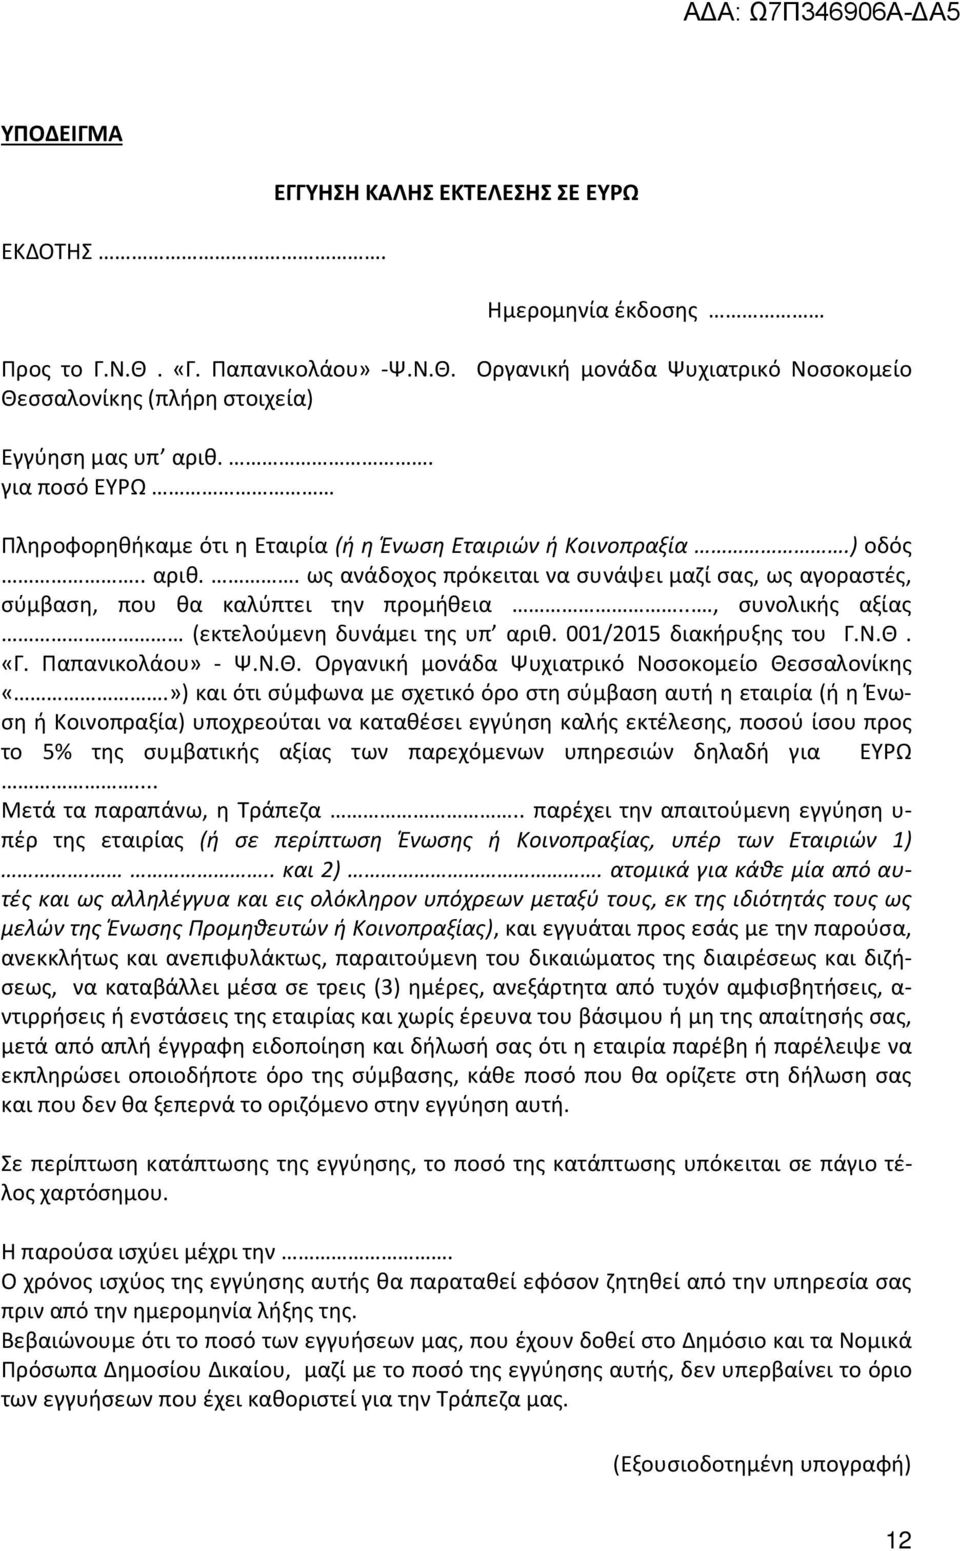 .., συνολικής αξίας (εκτελούμενη δυνάμει της υπ αριθ. 001/2015 διακήρυξης του Γ.Ν.Θ. «Γ. Παπανικολάου» - Ψ.Ν.Θ. Οργανική μονάδα Ψυχιατρικό Νοσοκομείο Θεσσαλονίκης «.